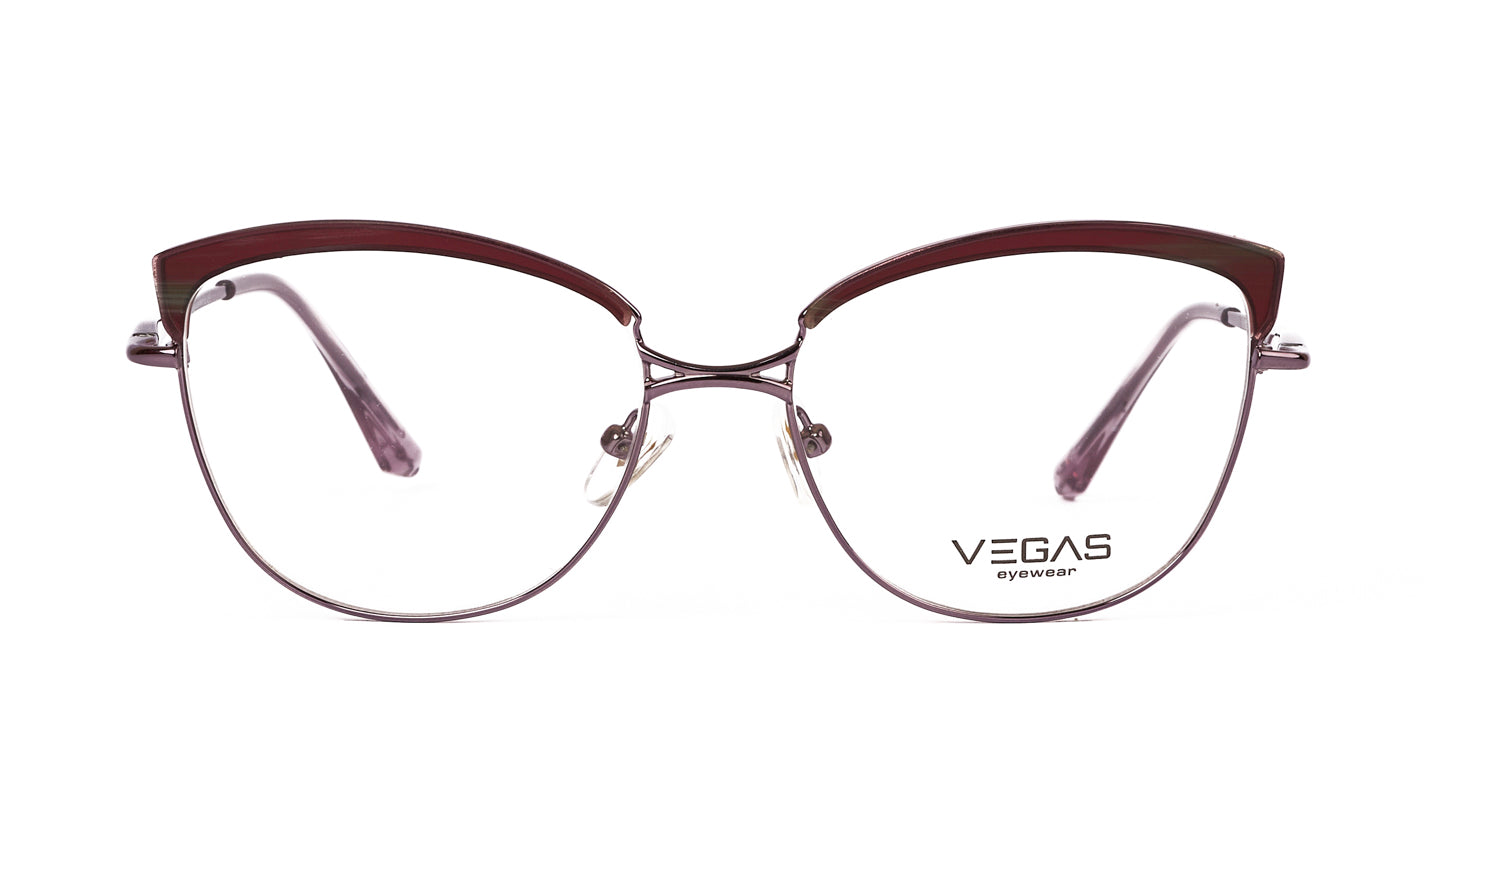 VEGAS 12663J - COC Eyewear